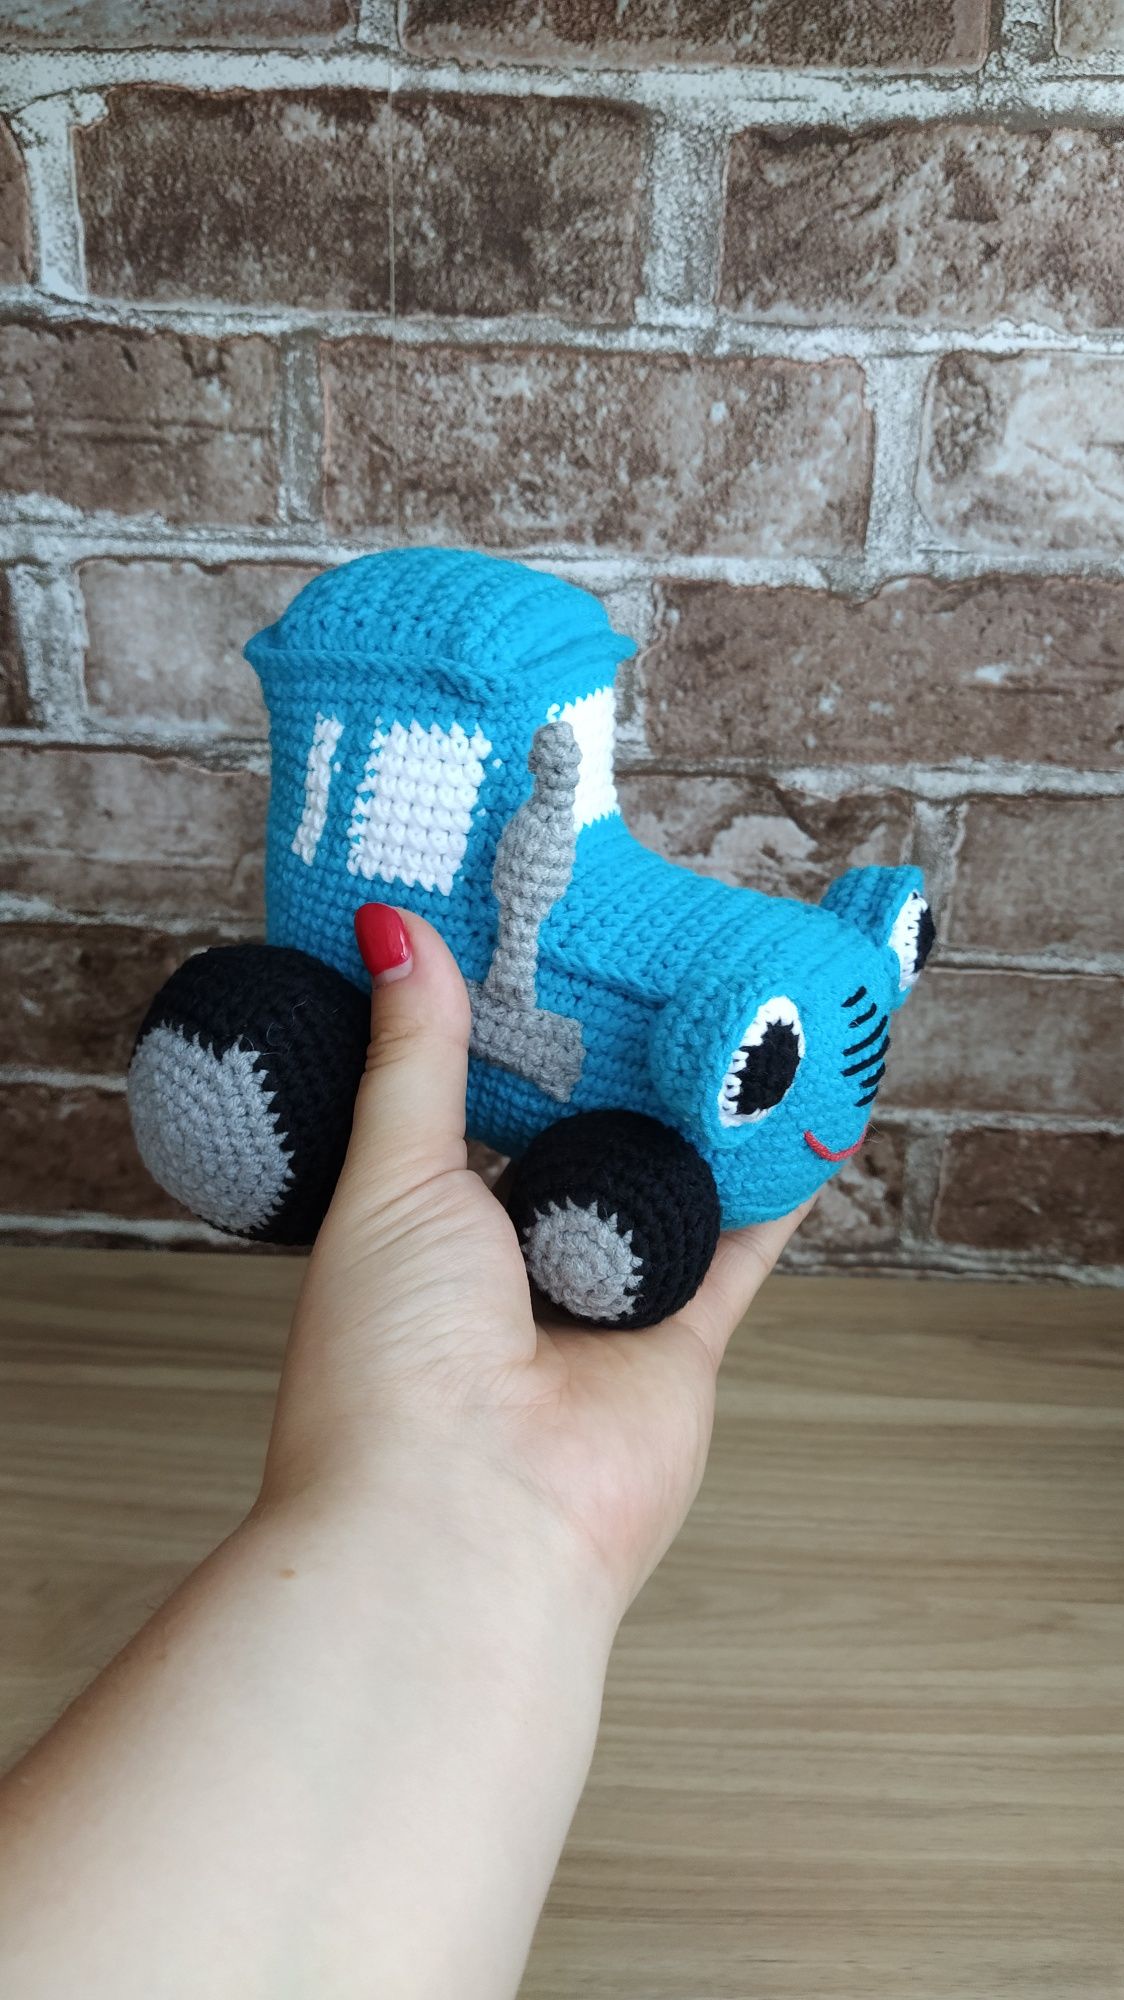 Іграшка синій трактор міні